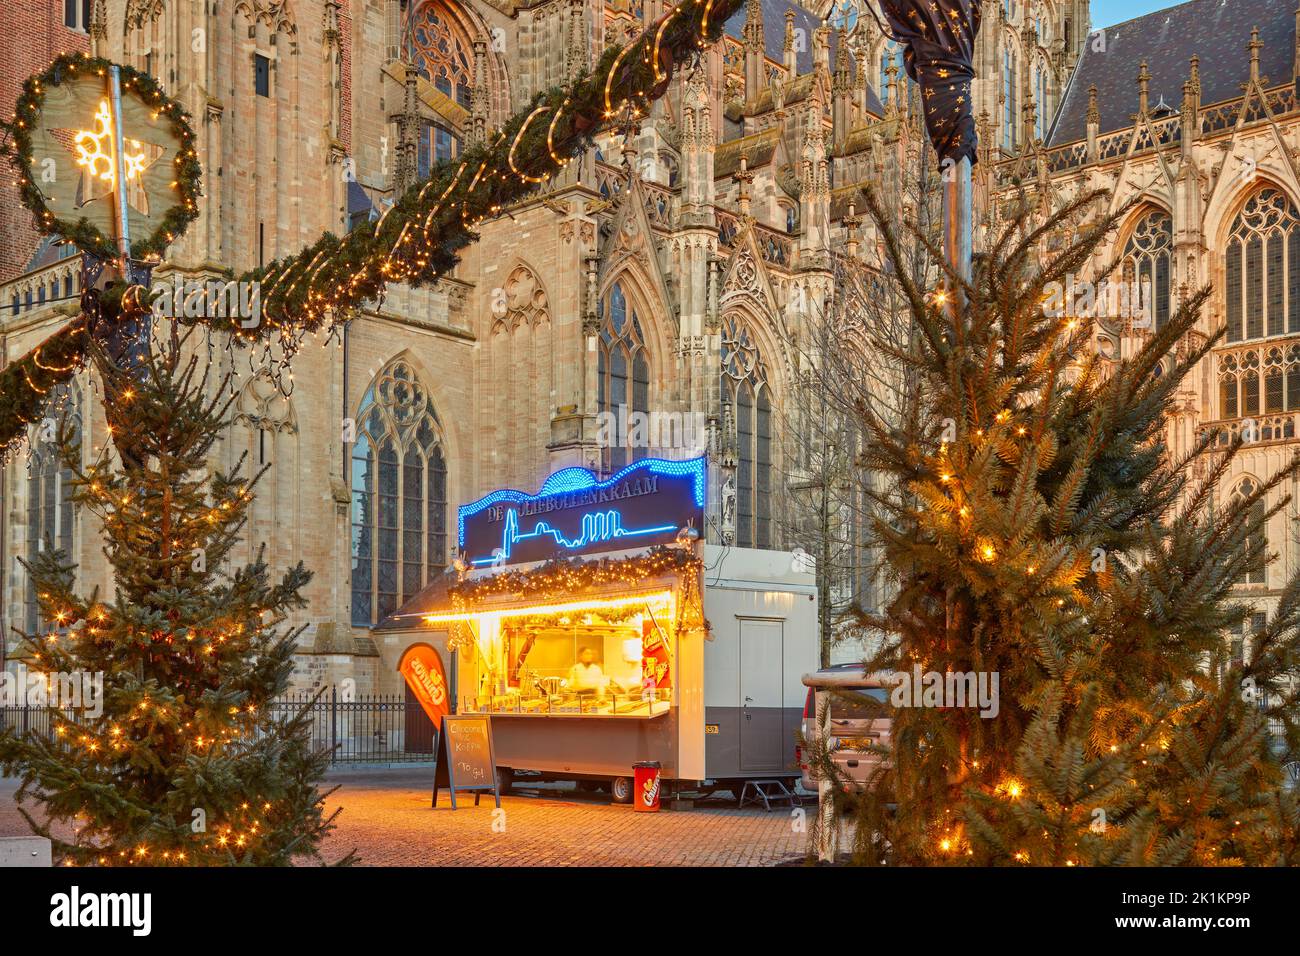 Den bosch, Niederlande - 21. Dezember 2021: Stand mit traditionellen niederländischen "Oliebollen" (frittierte Teigbällchen) im Winter im Stadtzentrum von Stockfoto